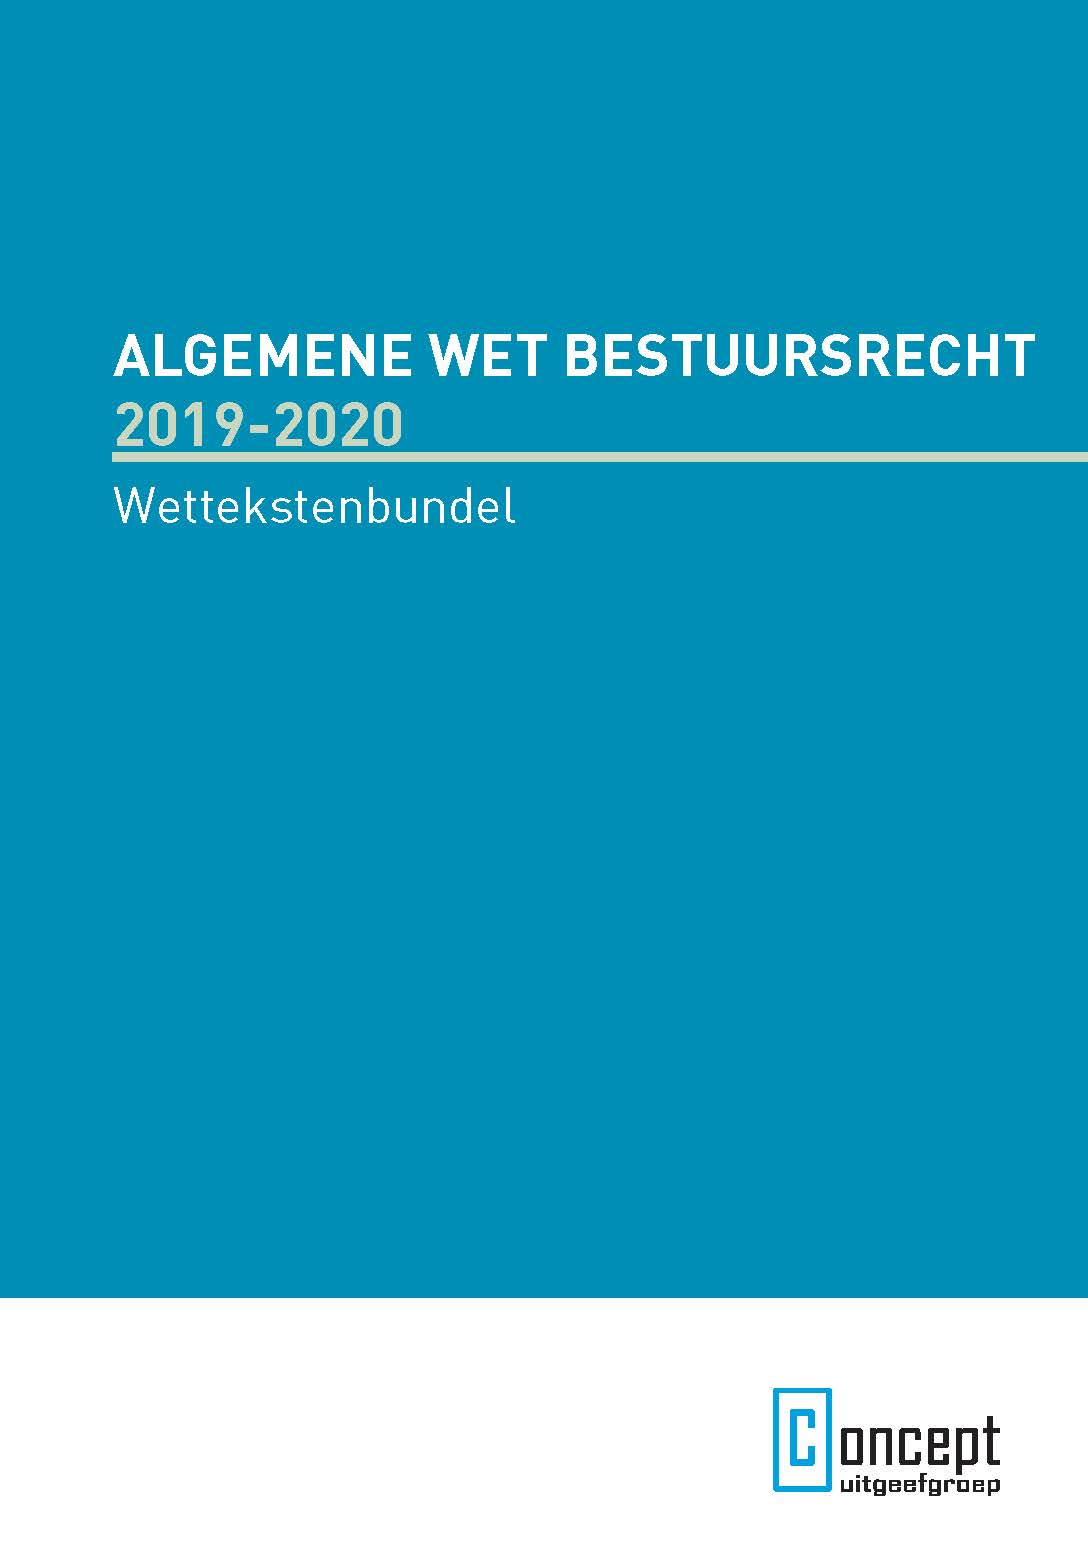 Algmeen Wet Bestuursrecht 2019-2020